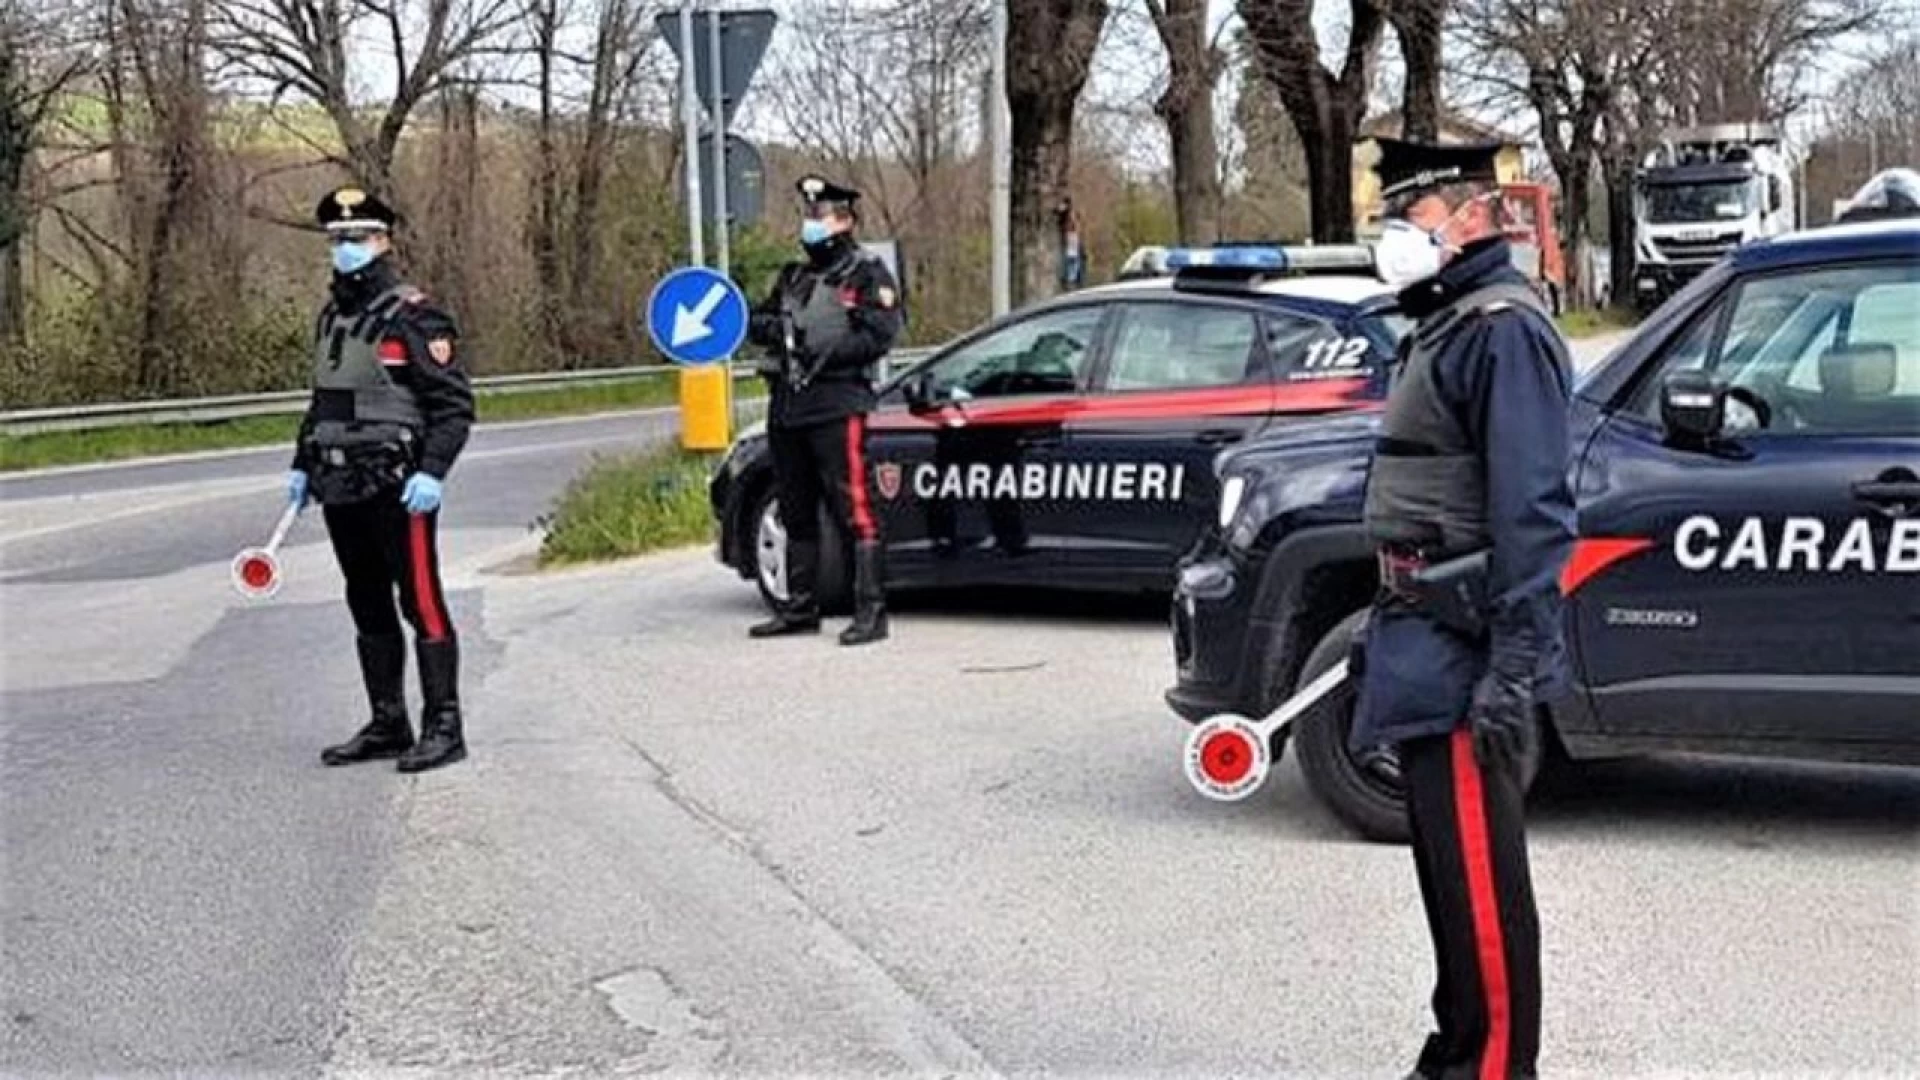 Isernia: i Carabinieri denunciano una persona per resistenza a pubblico ufficiale e guida in stato di ebrezza alcolica.